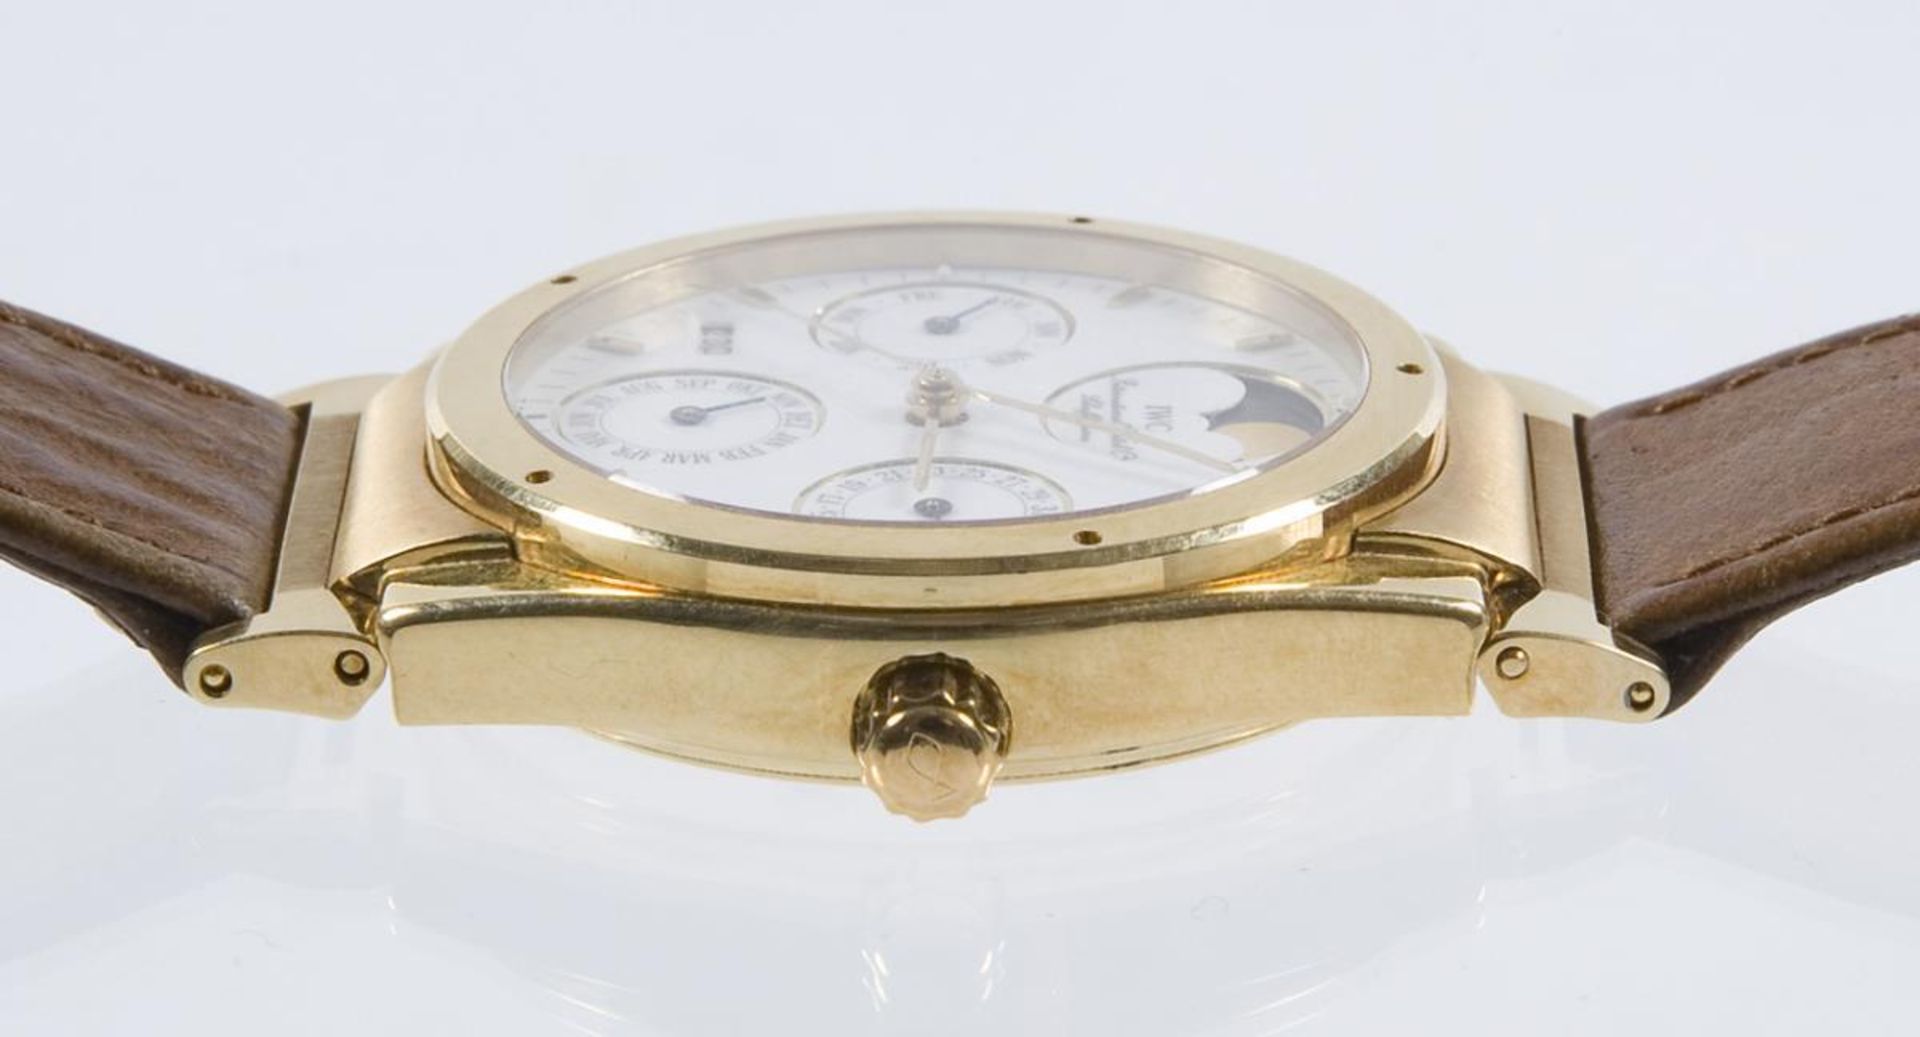 Armbanduhr: Ingenieur Perpetual Calendar in Gold.. IWC SCHAFFHAUSEN.| siehe Nachtrag - Bild 6 aus 6